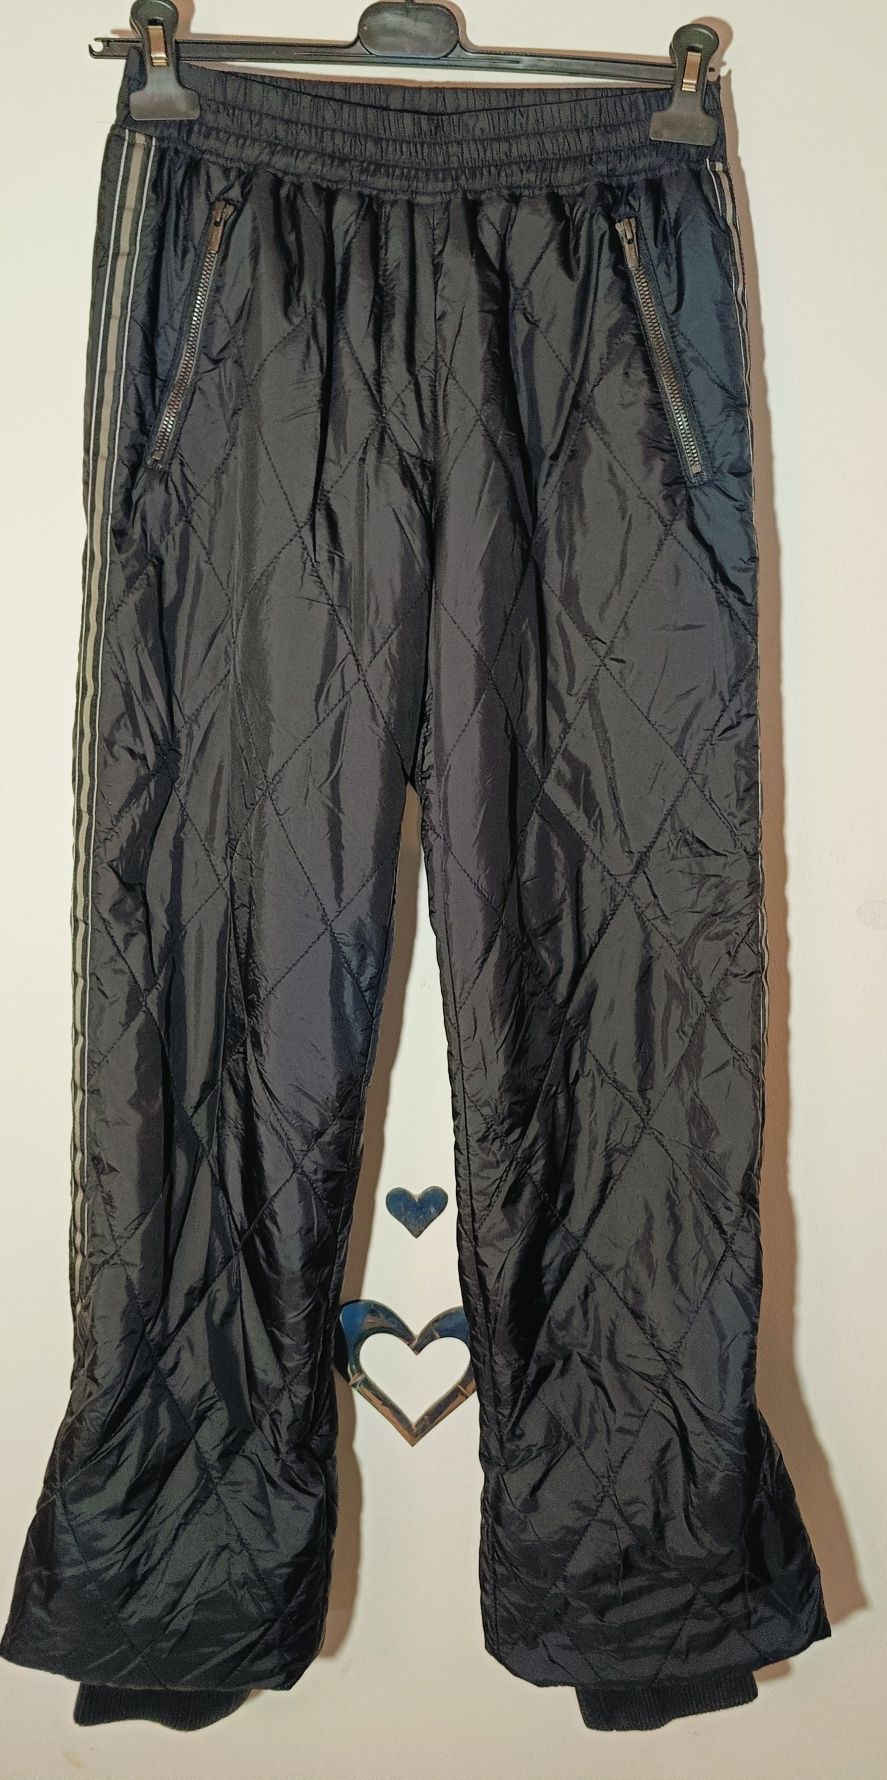 Spodnie narciarskie/zimowe firmy Project AJ117 rozmiar S